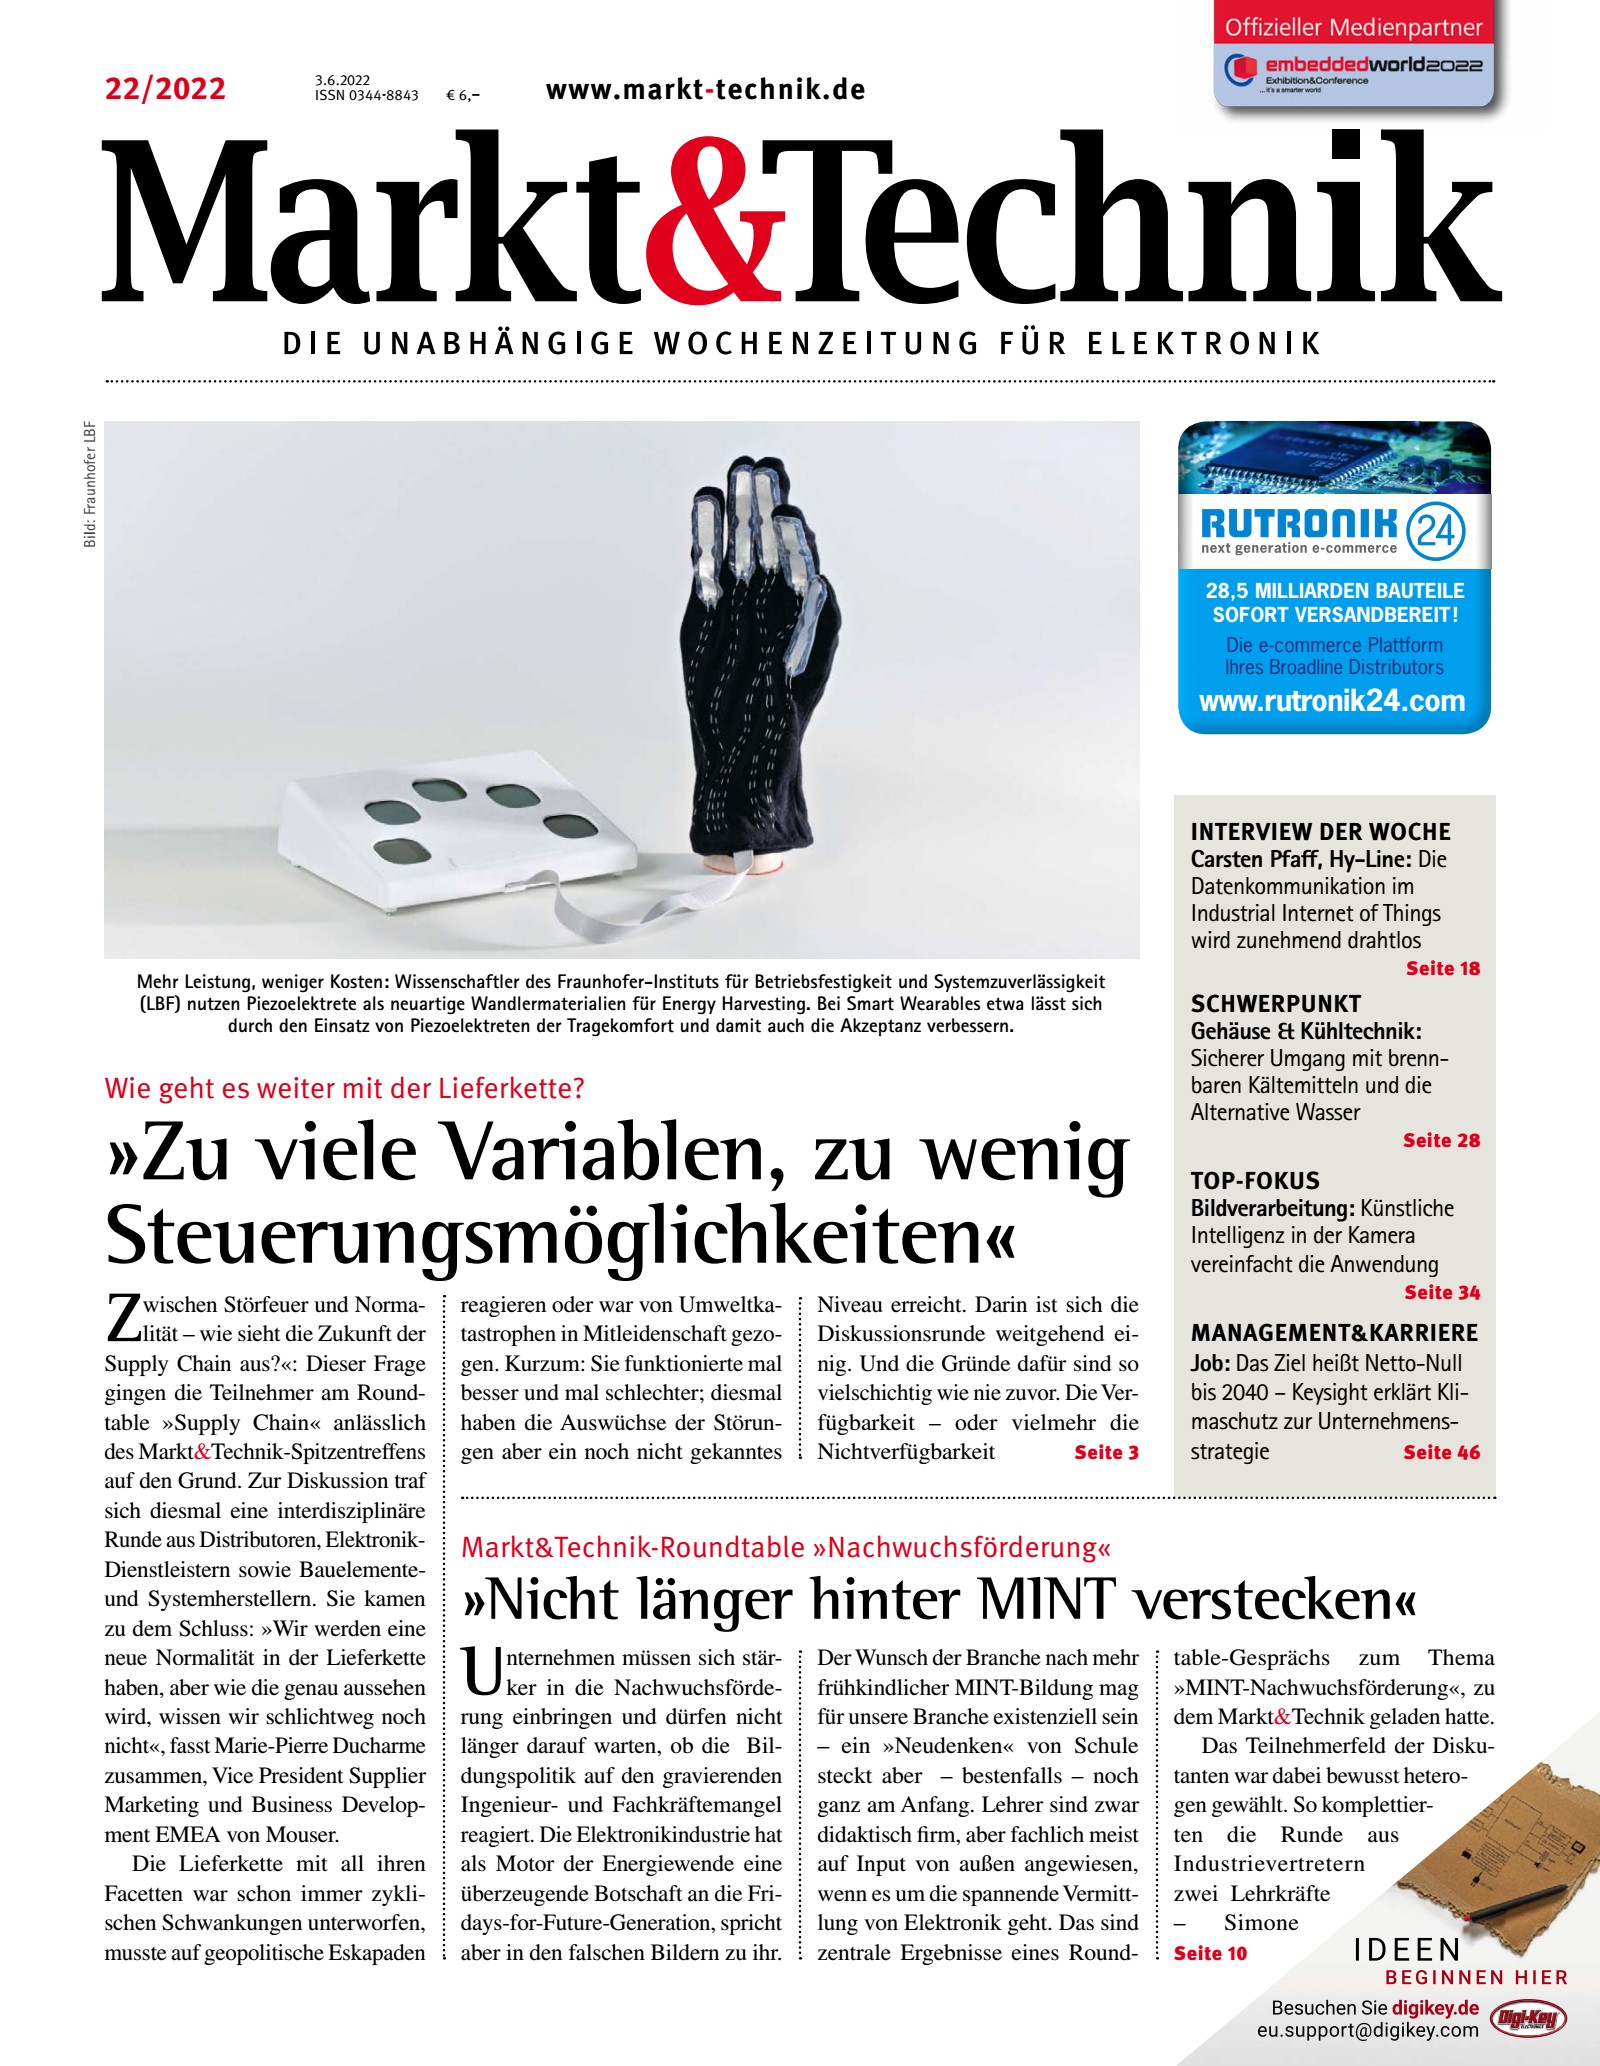 Markt&Technik 22/2022 Digital